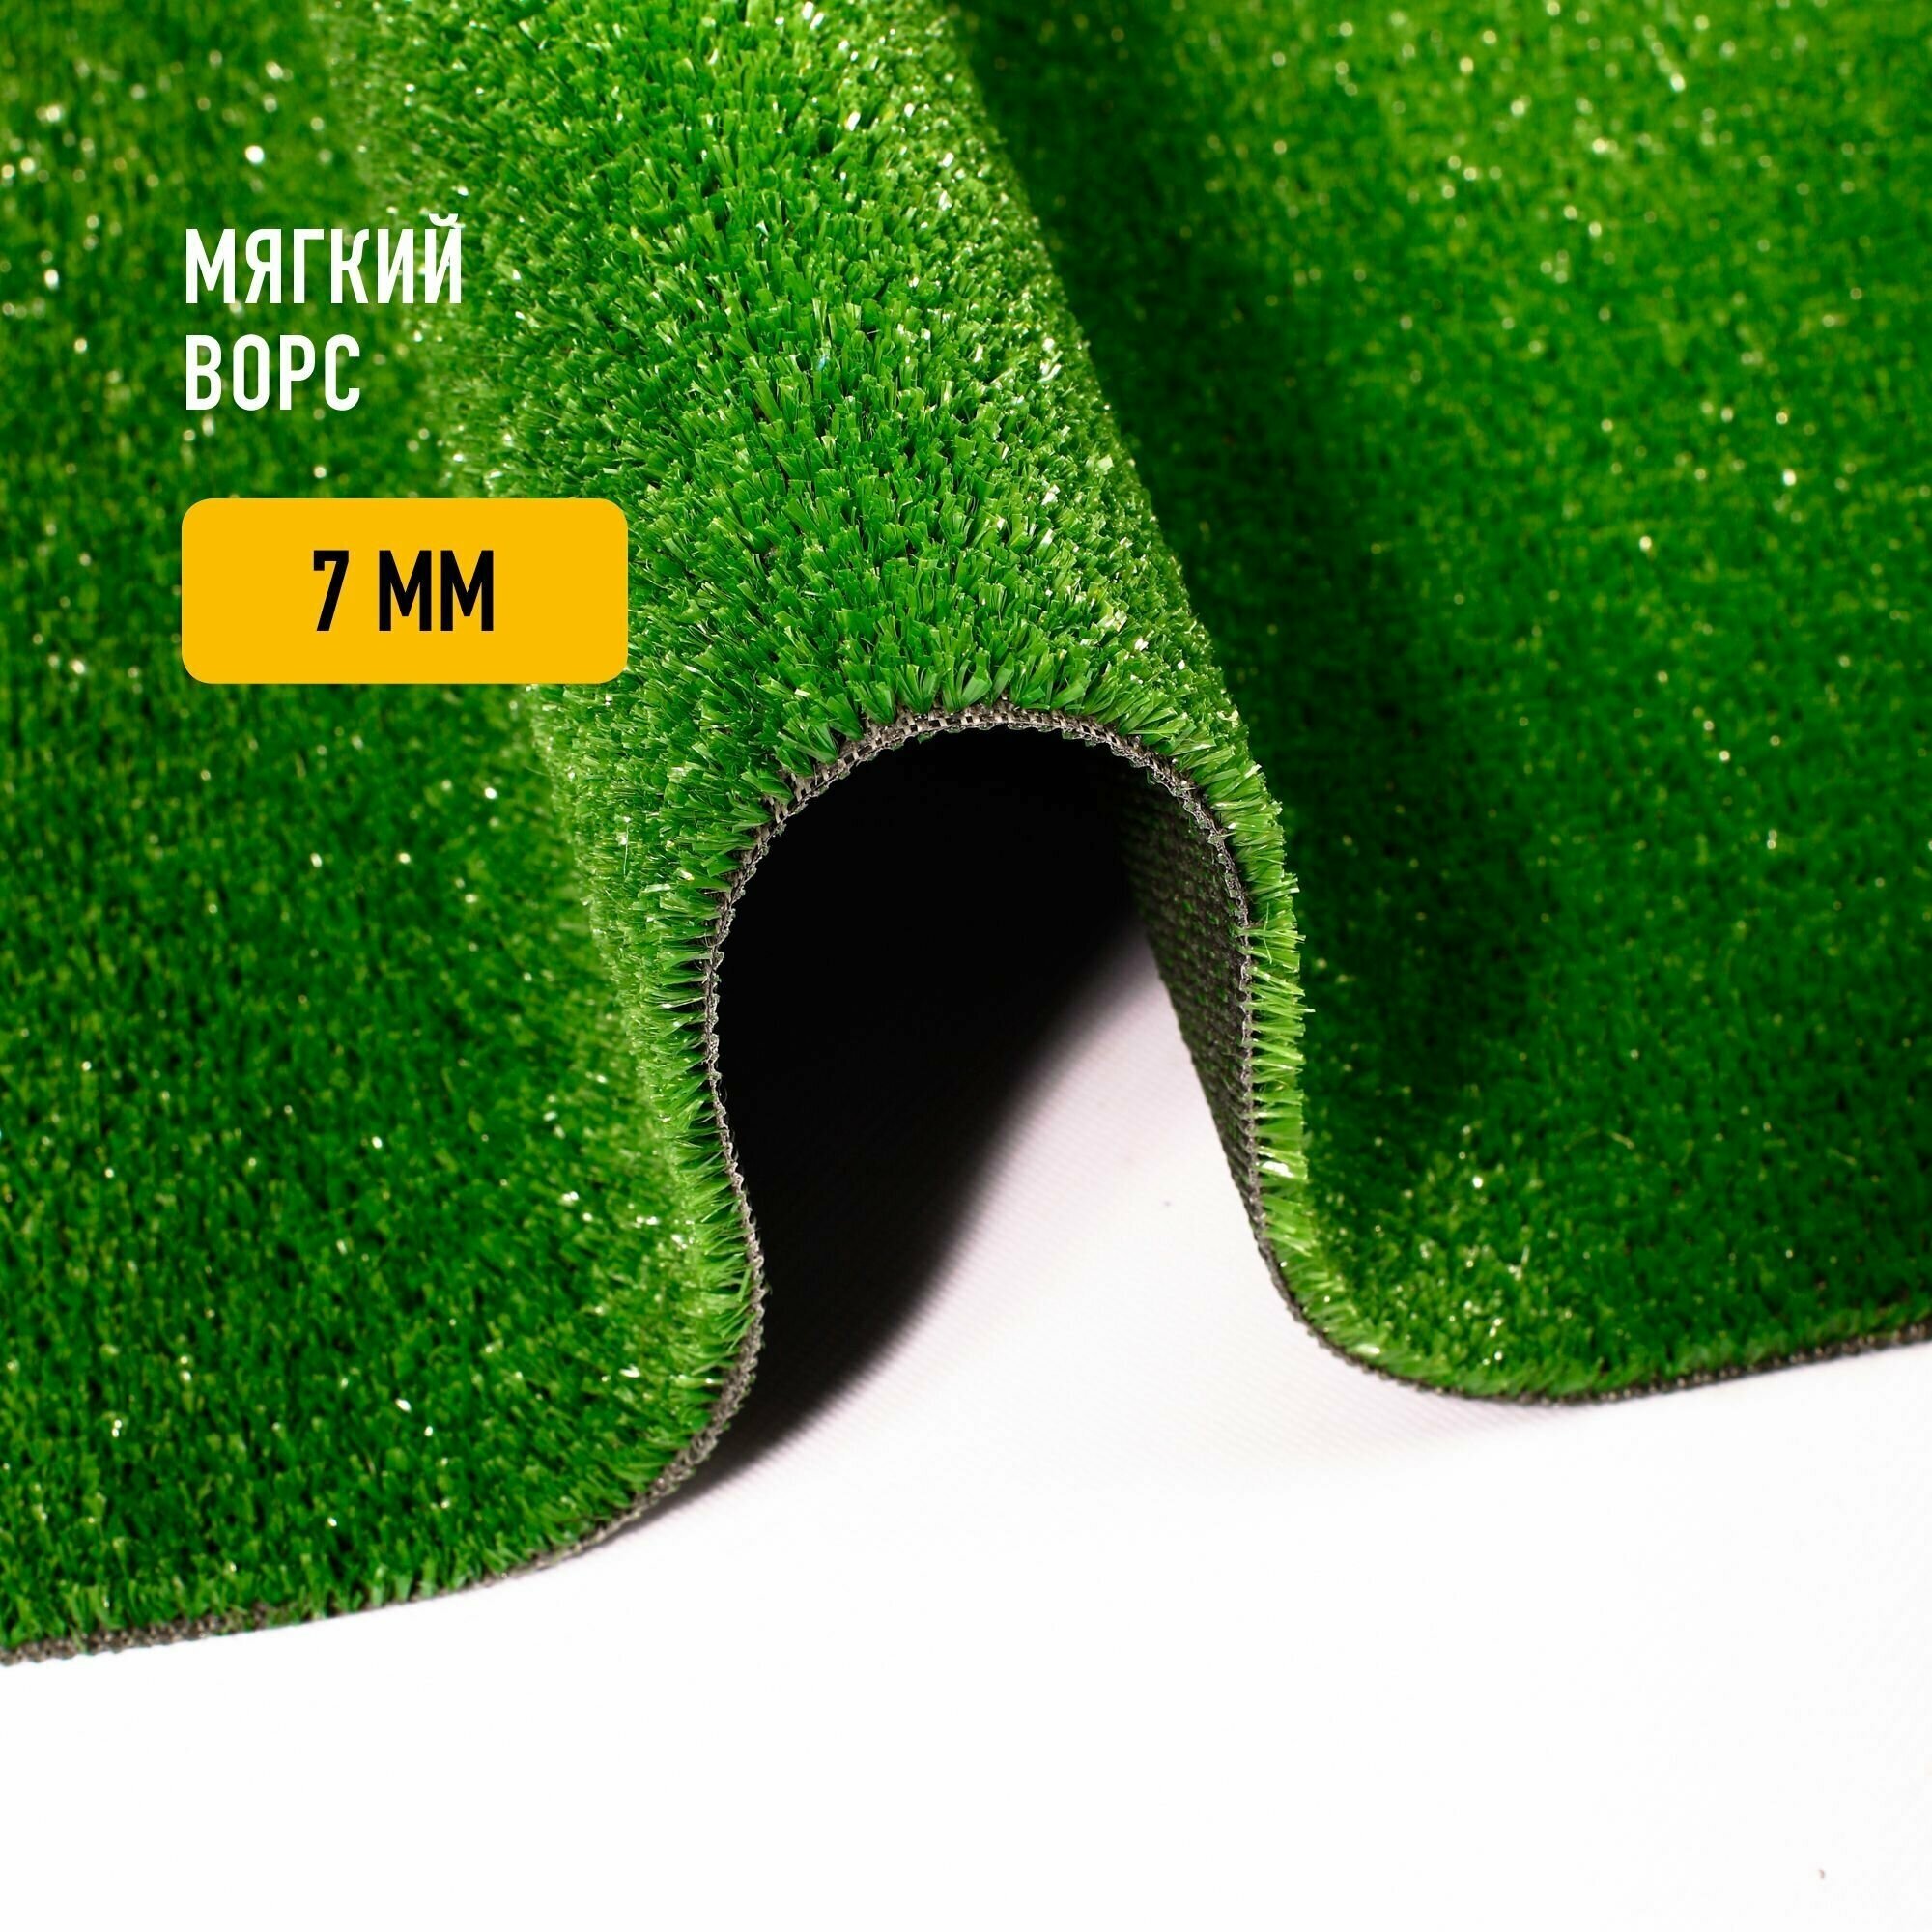 Искусственный газон 2х1,5 м в конверте Premium Grass Nature 7 Green, ворс 7 мм. Искусственная трава. 4786393-2х1,5